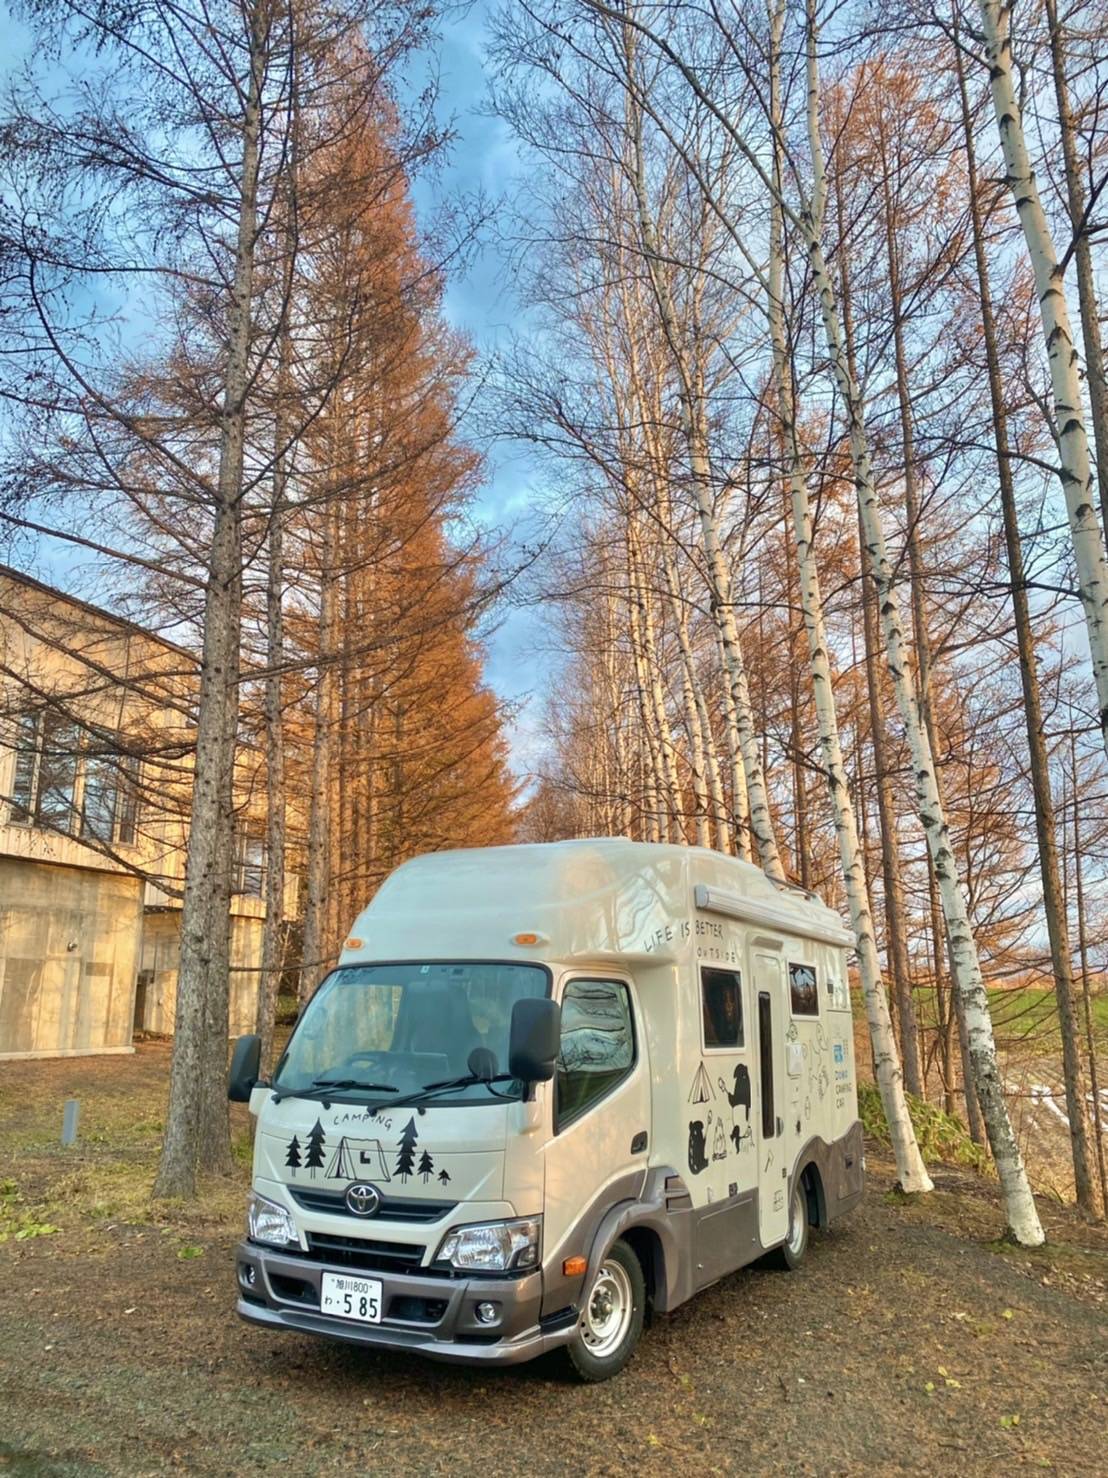 【Tokyo】Japan 6ppl RV Caravan 24 hours Rental Experience